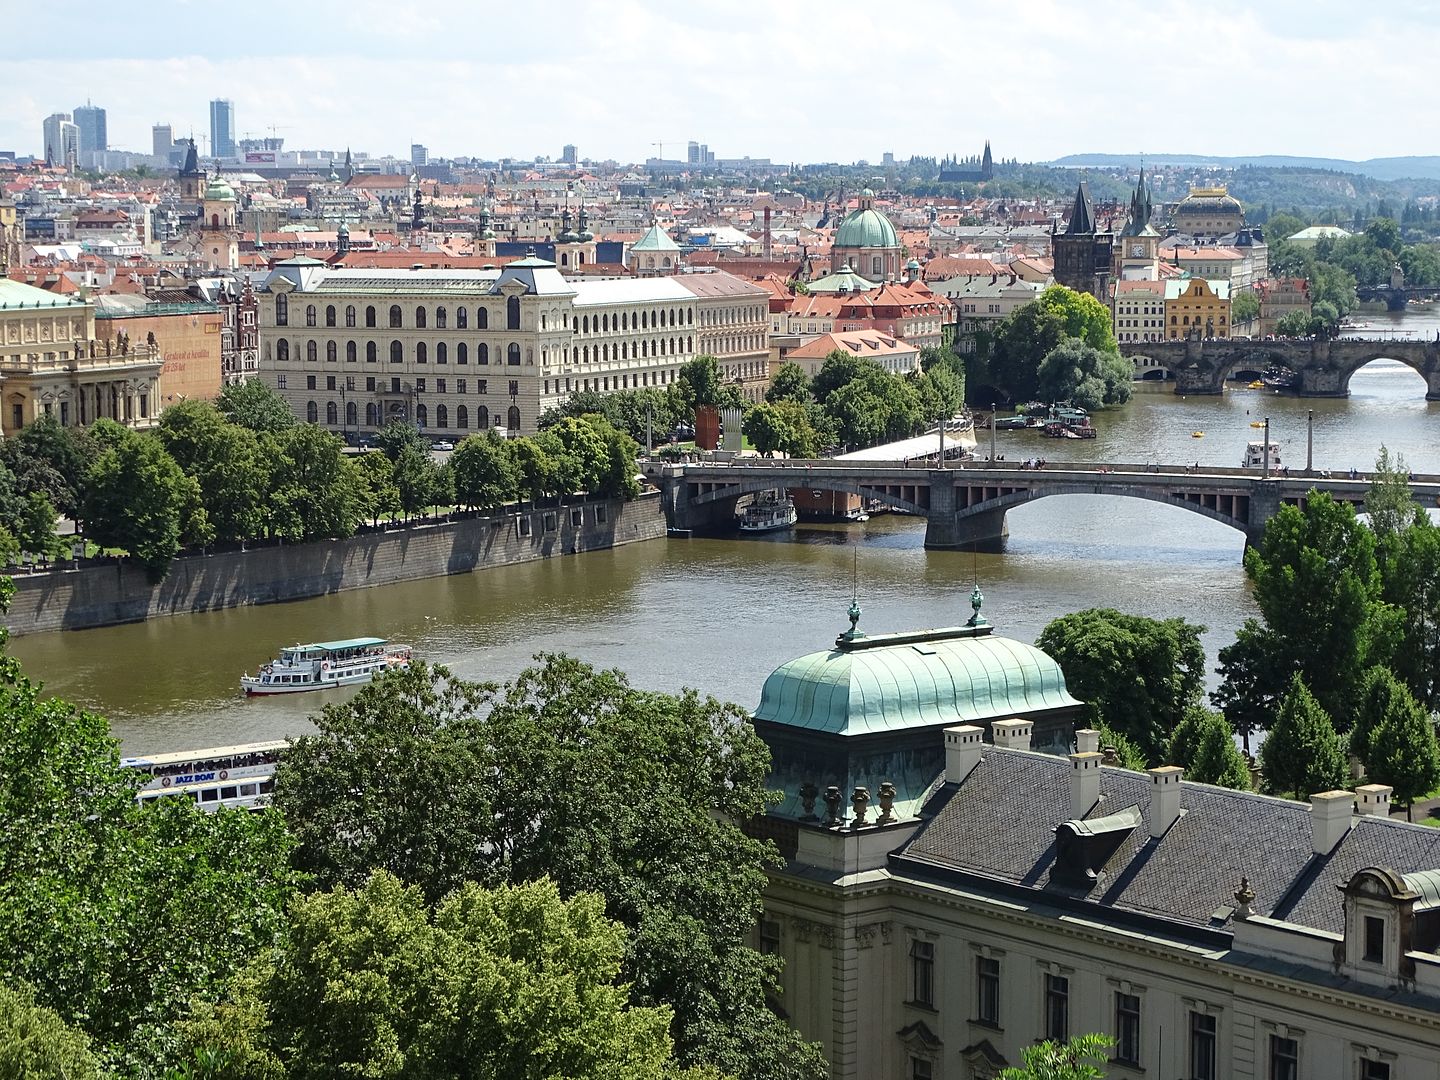 7 días en Praga con escursiones a Dresde (Alemania),Karlovy Vary y Terezin (E.C) - Blogs of Czech Republic - Día 3: Viernes 1 de Julio de 2016 (27)